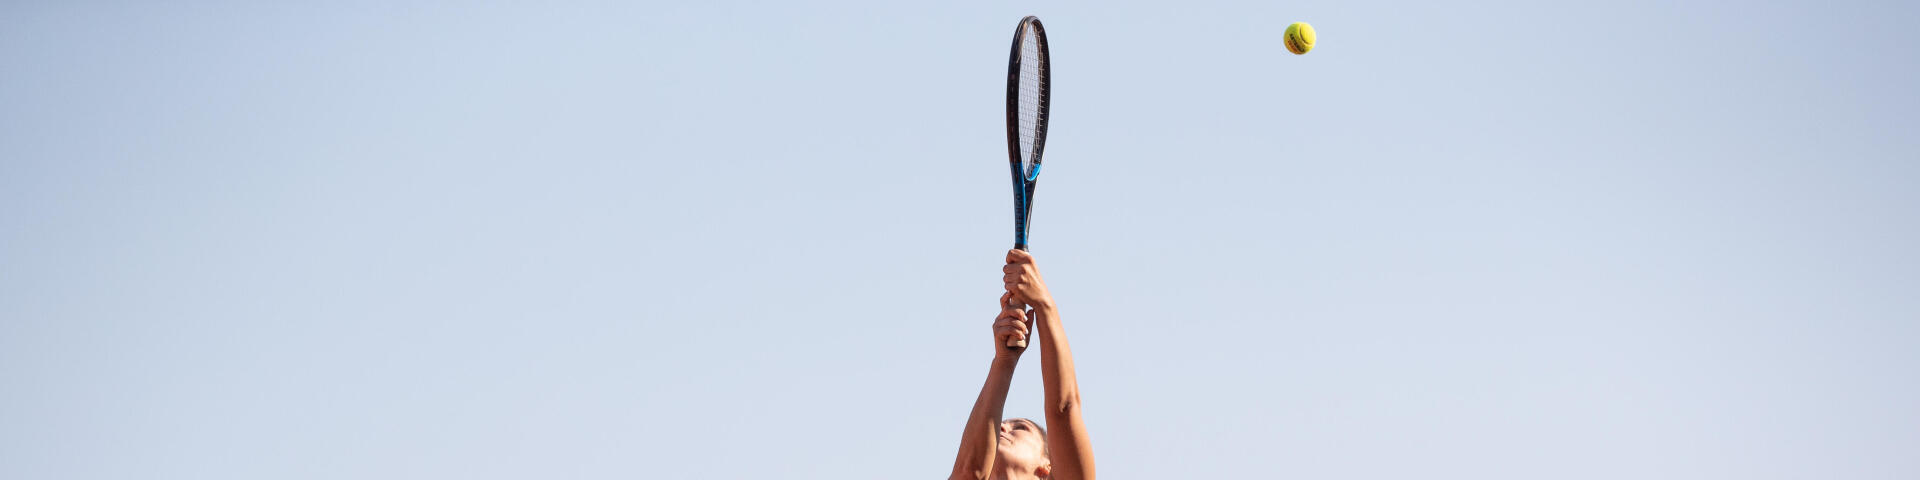 Technique Tennis : comment-effectuer-le-lob-parfait